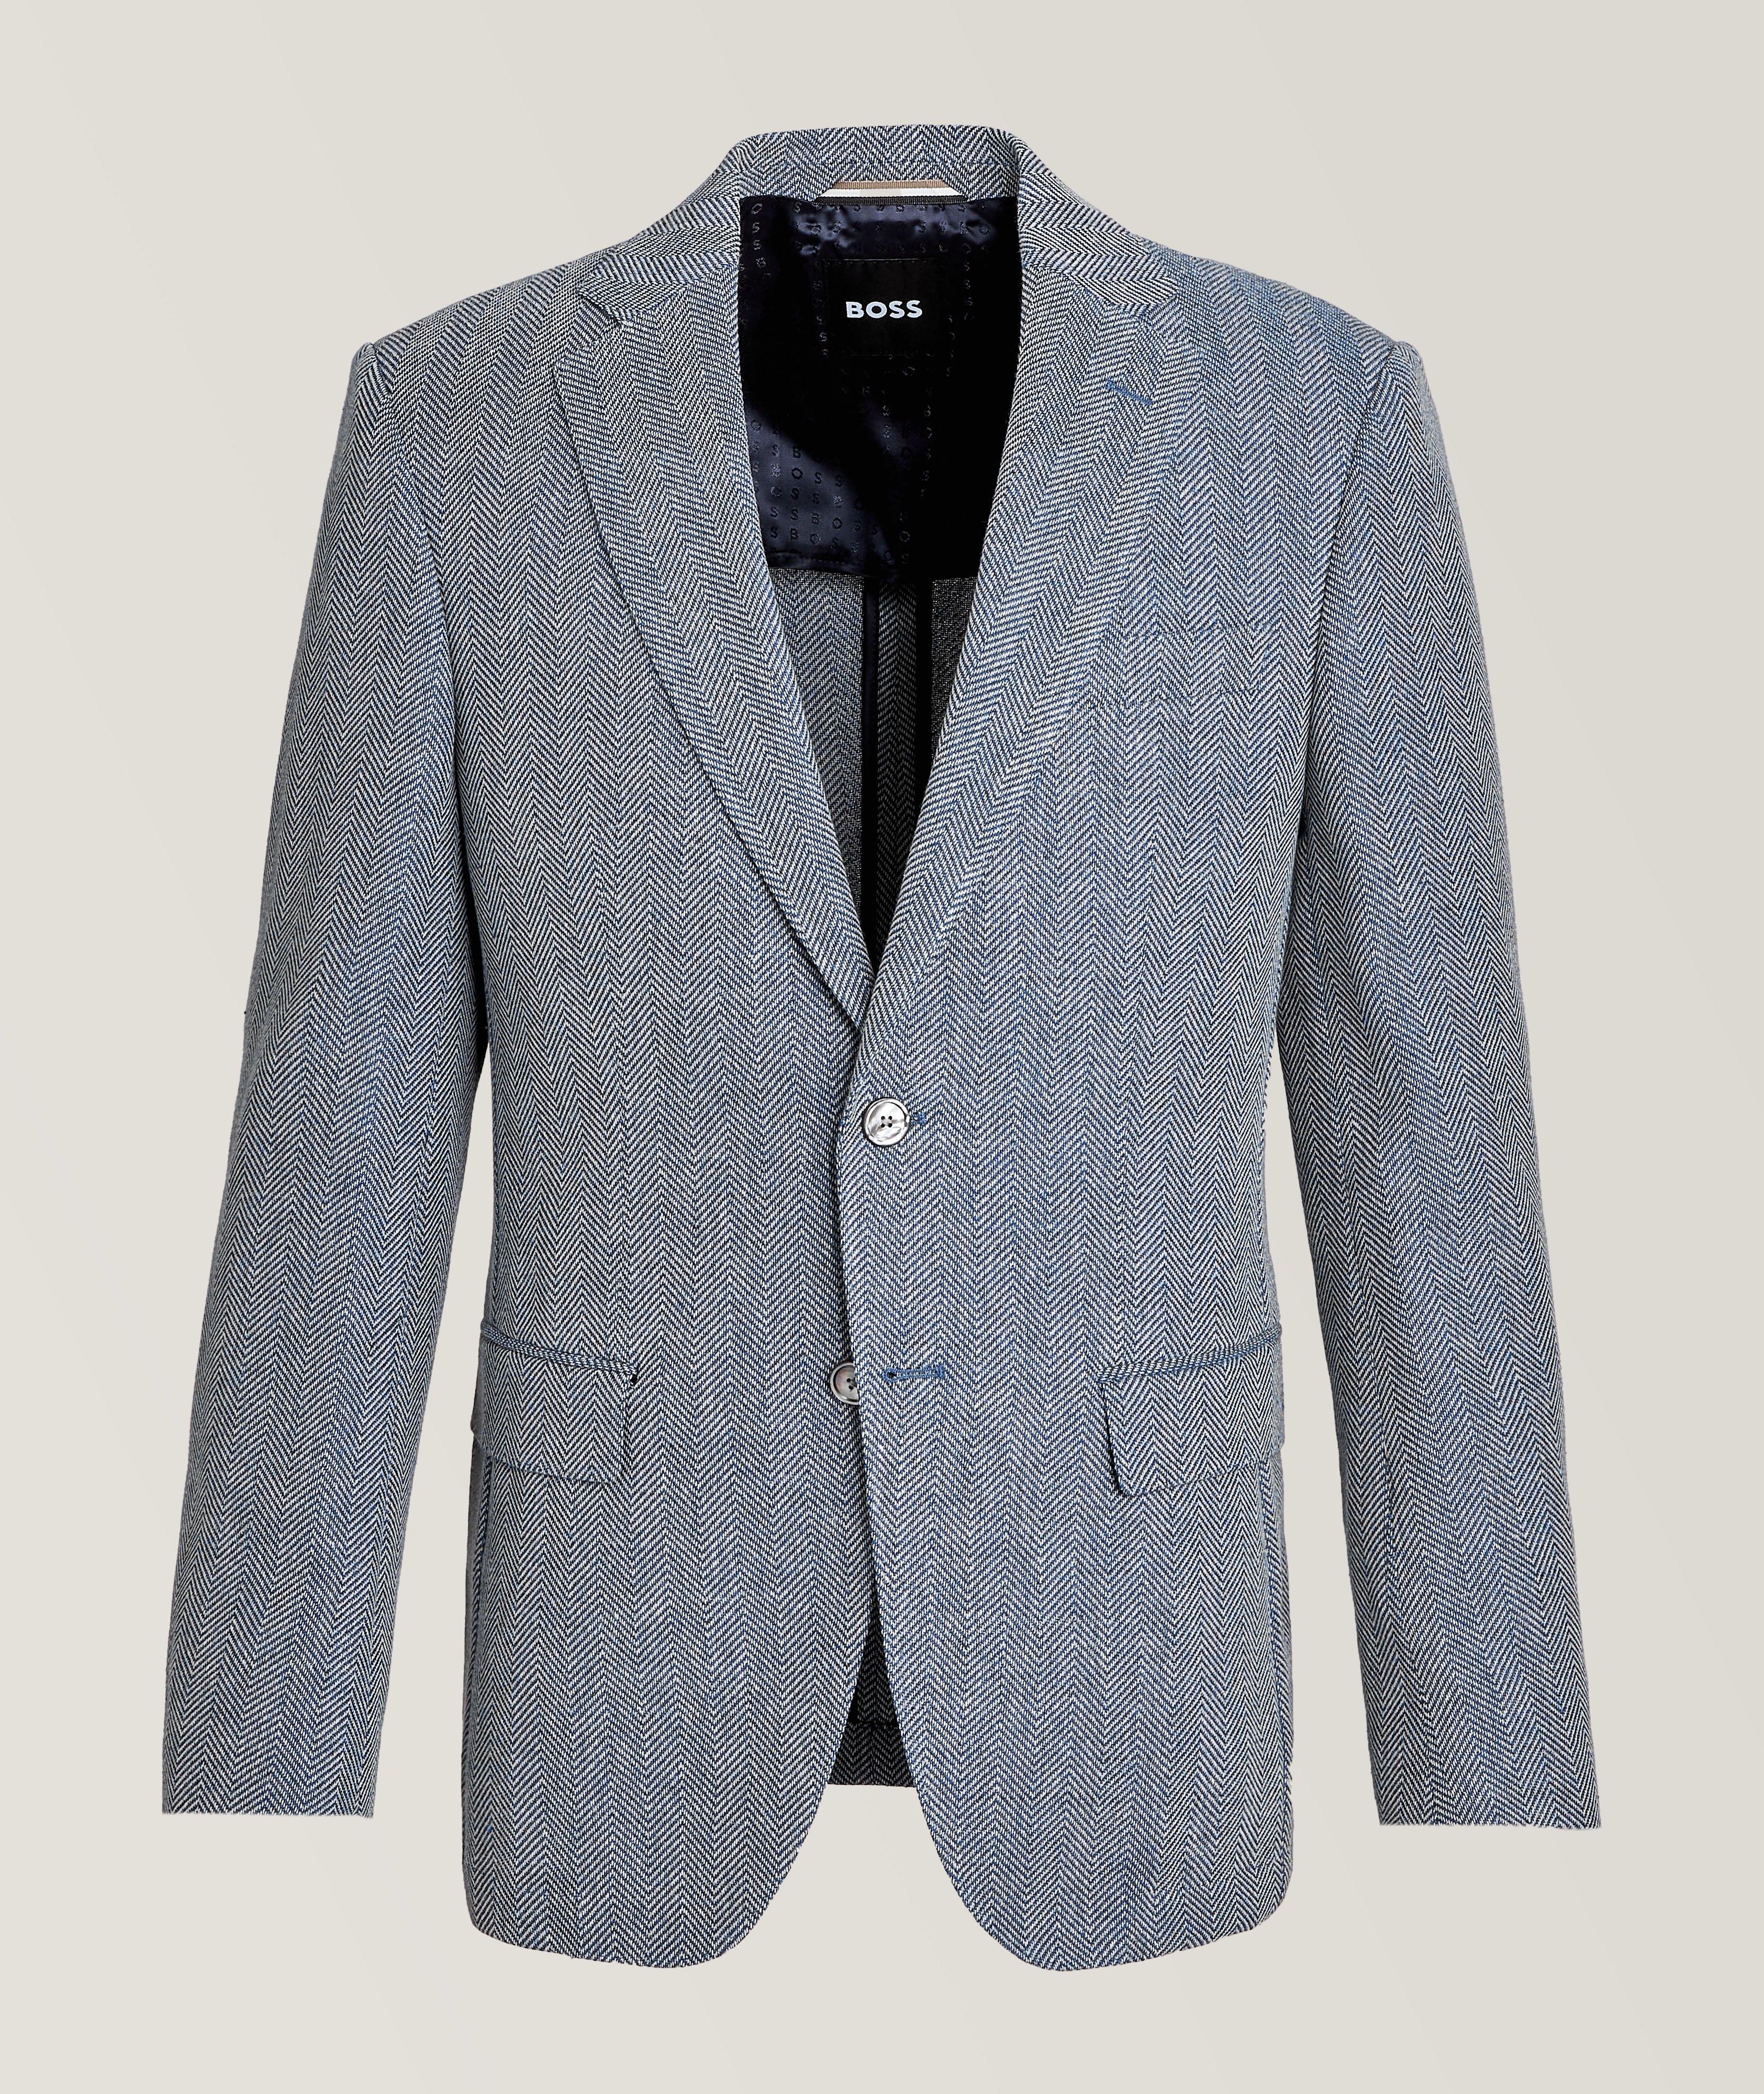 Hutson Herringbone Weave Cotton-Virgin Wool Sport Jacket